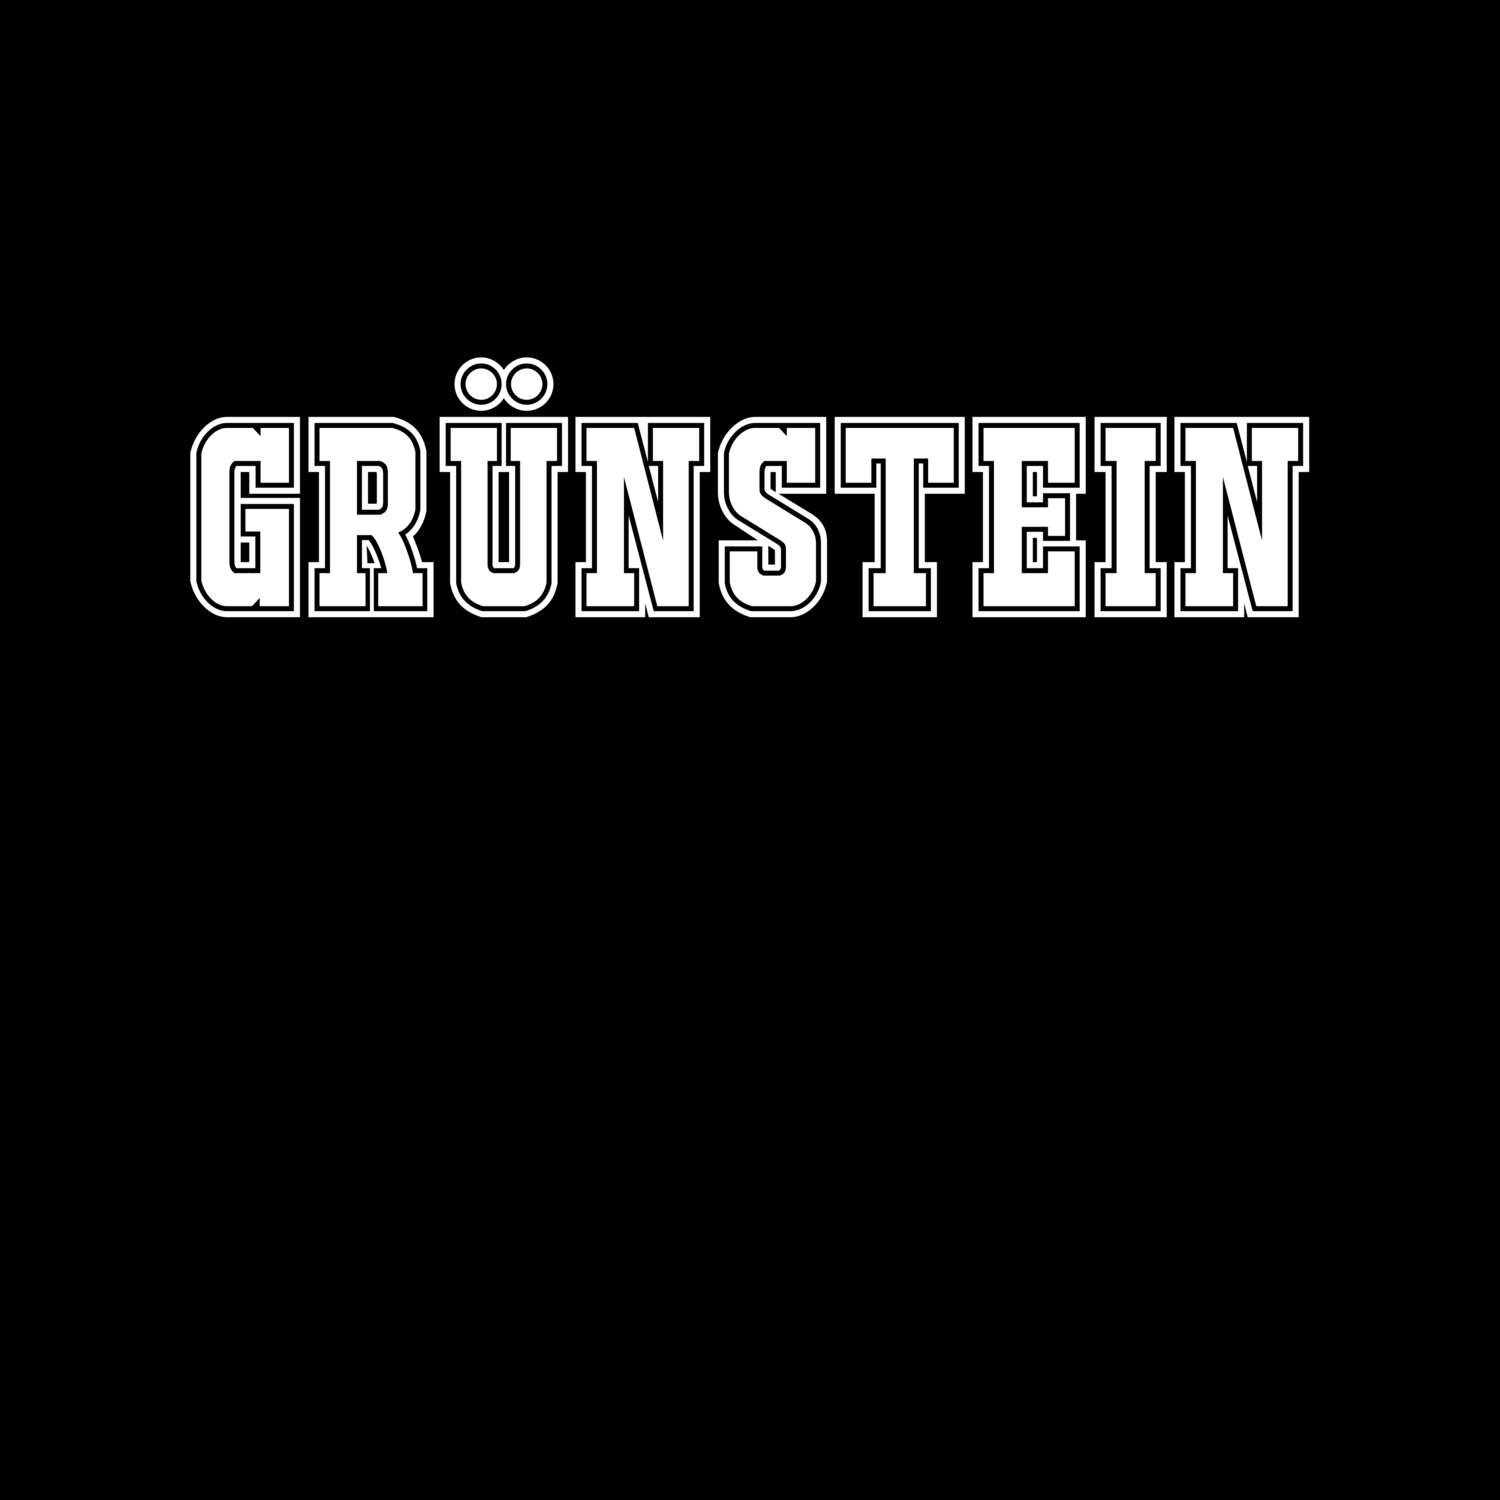 Grünstein T-Shirt »Classic«